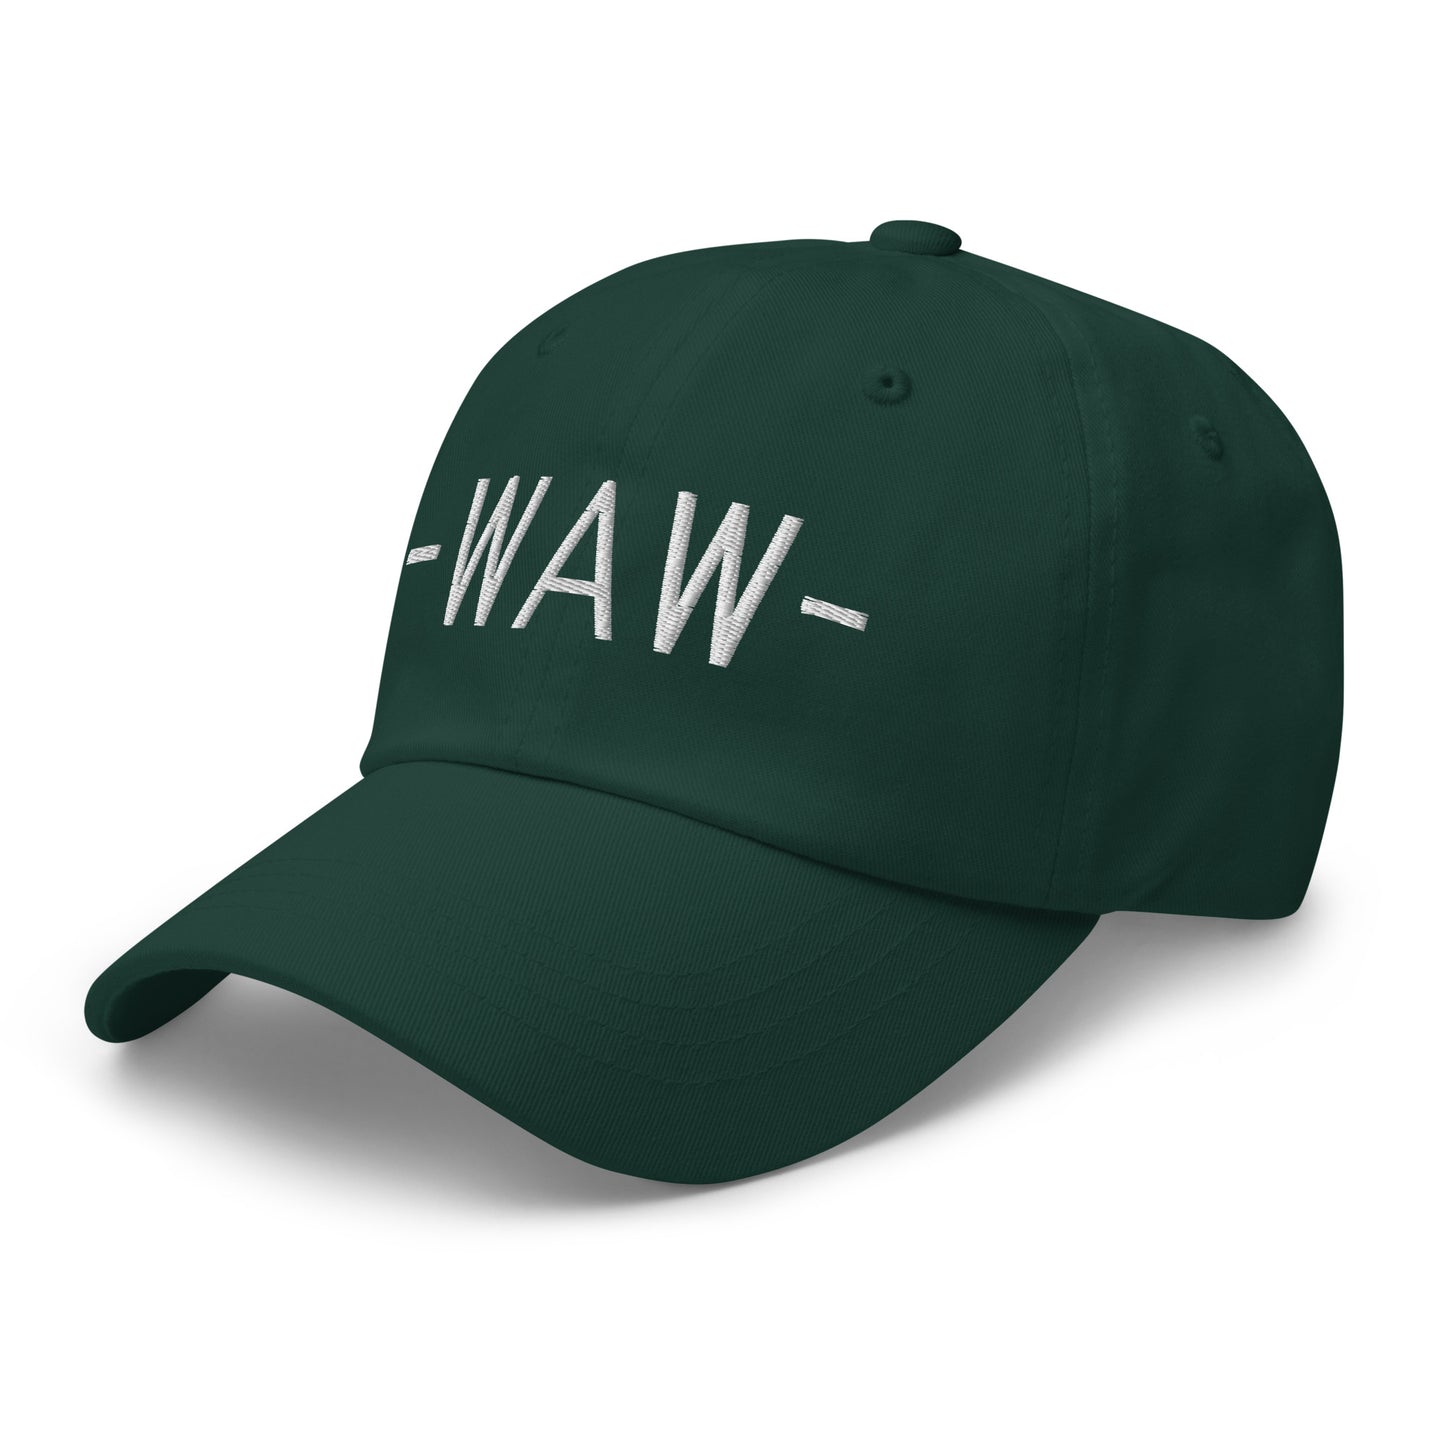 Souvenir Baseball Cap - White • WAW Warsaw • YHM Designs - Image 18